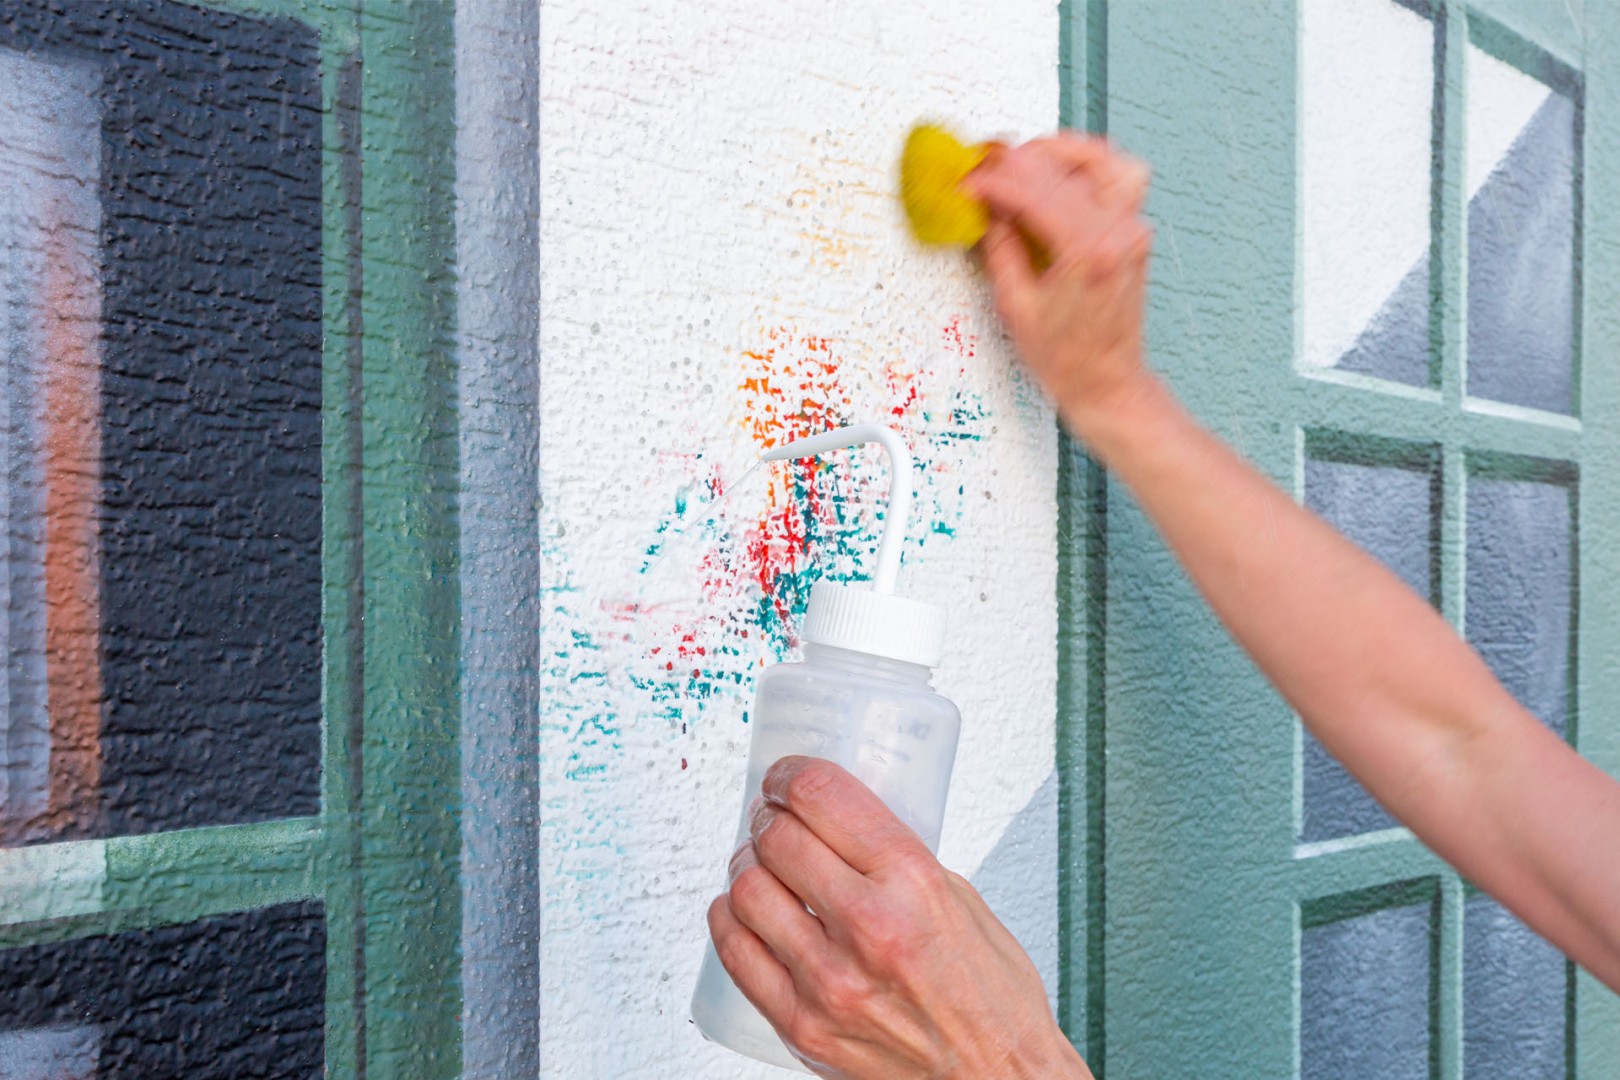 05 实践的考验：用水和清洁海绵可轻松移除墙面壁画上的恶意涂鸦；有机硅保护膜可清洗20多次而毫无损伤。 